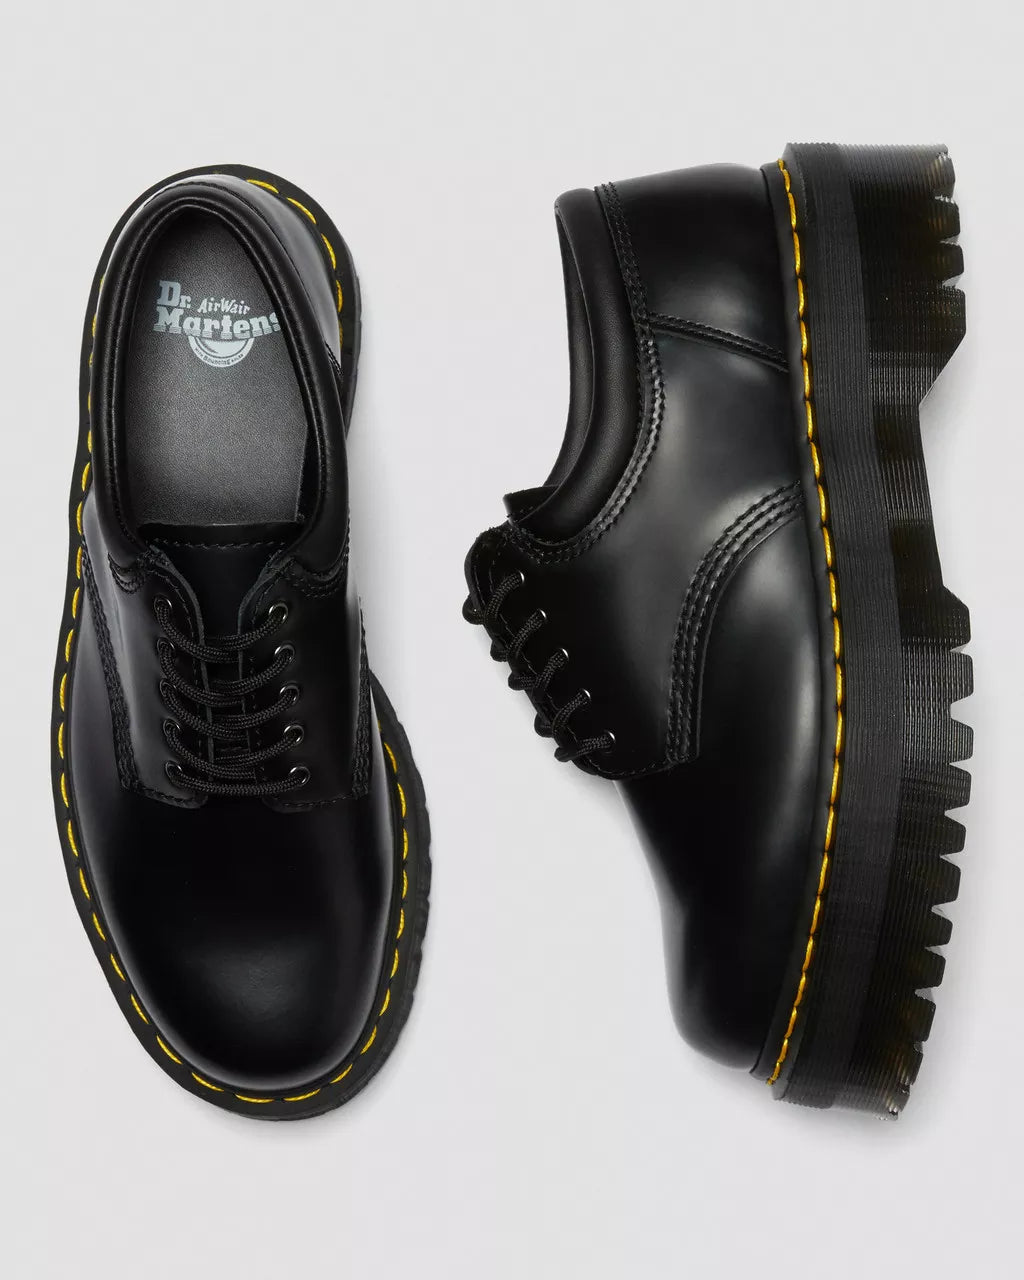 SHOES - DR.MARTENS - Quad Bex Smooth Leather Shoe - PLENTY